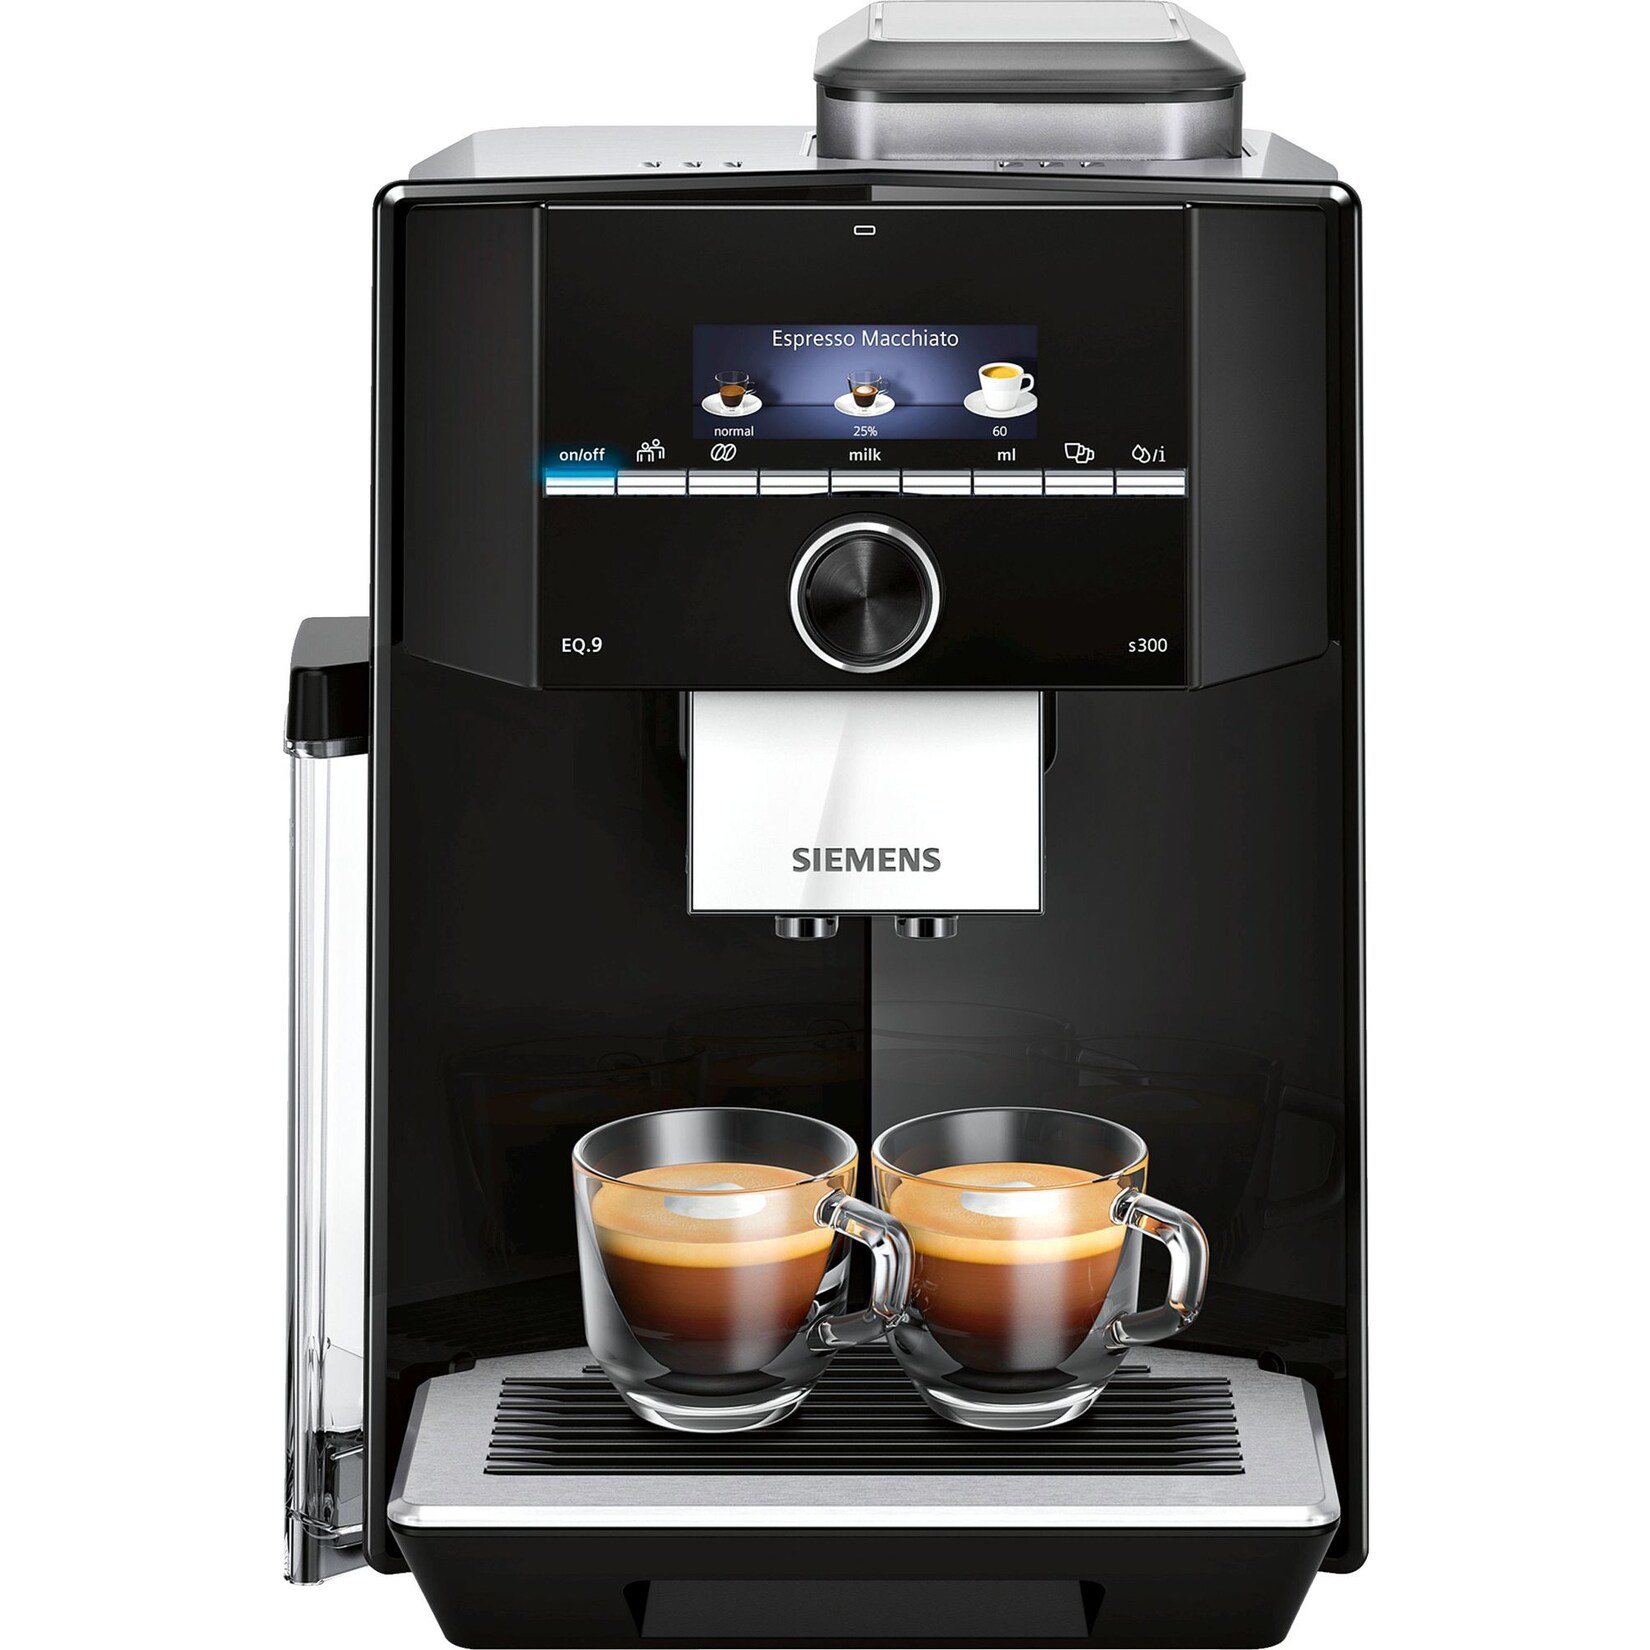 Kaffeevollautomat per Rechnung bestellen - mit Rechnungskauf Shops